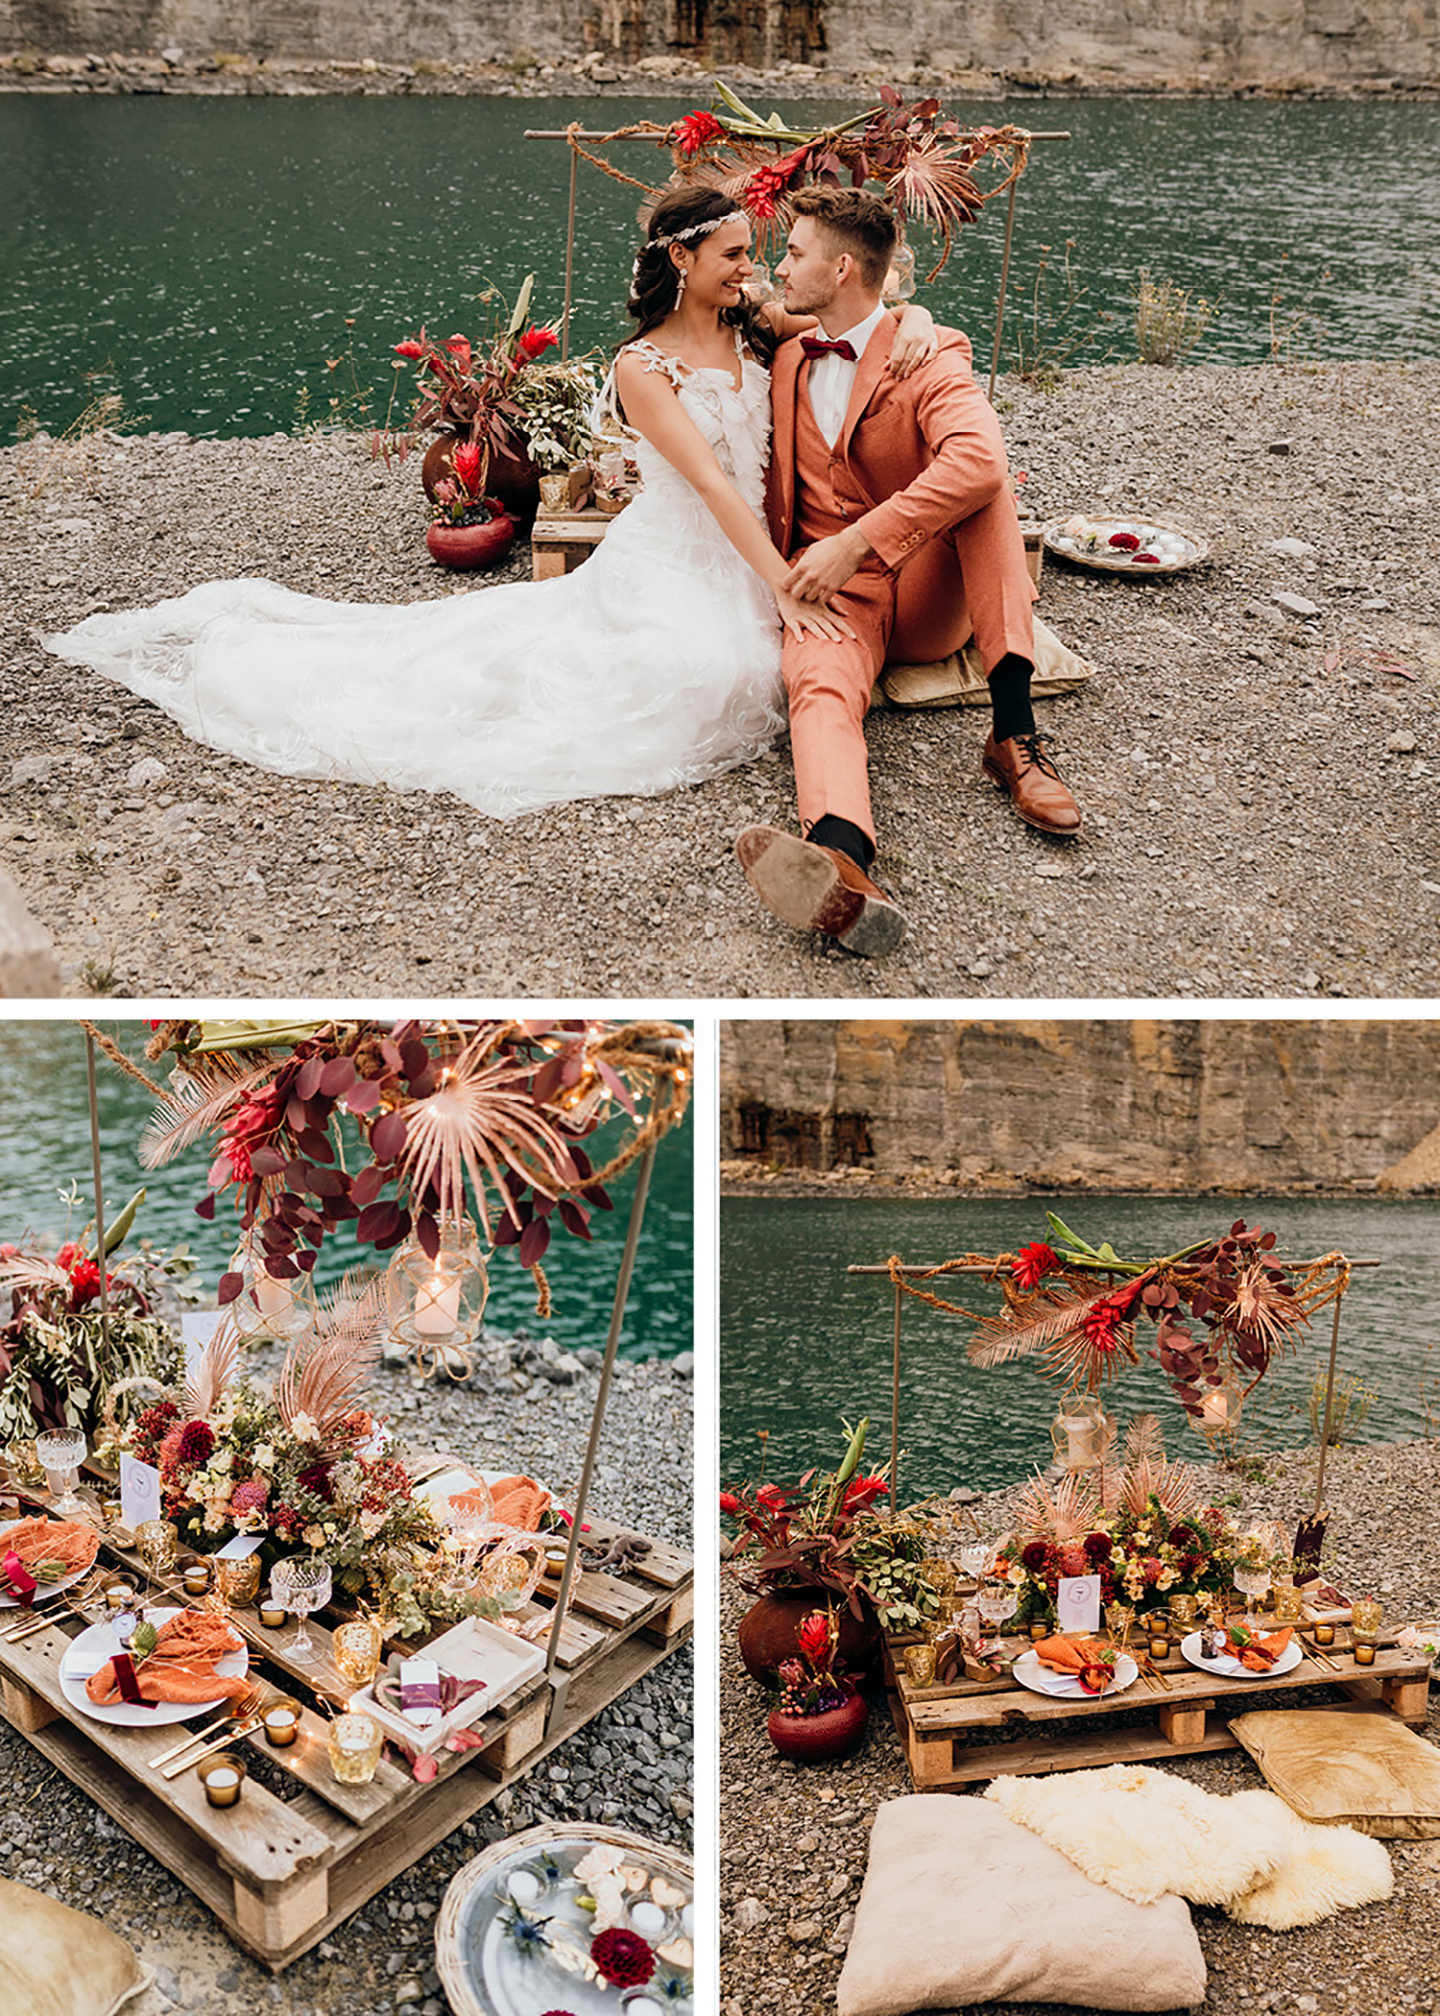 Die Hochzeitstafel und Blumendeko der Hochzeit sowie das auf Kissen sitzende Brautpaar vor dem Wasser im Steinbruch